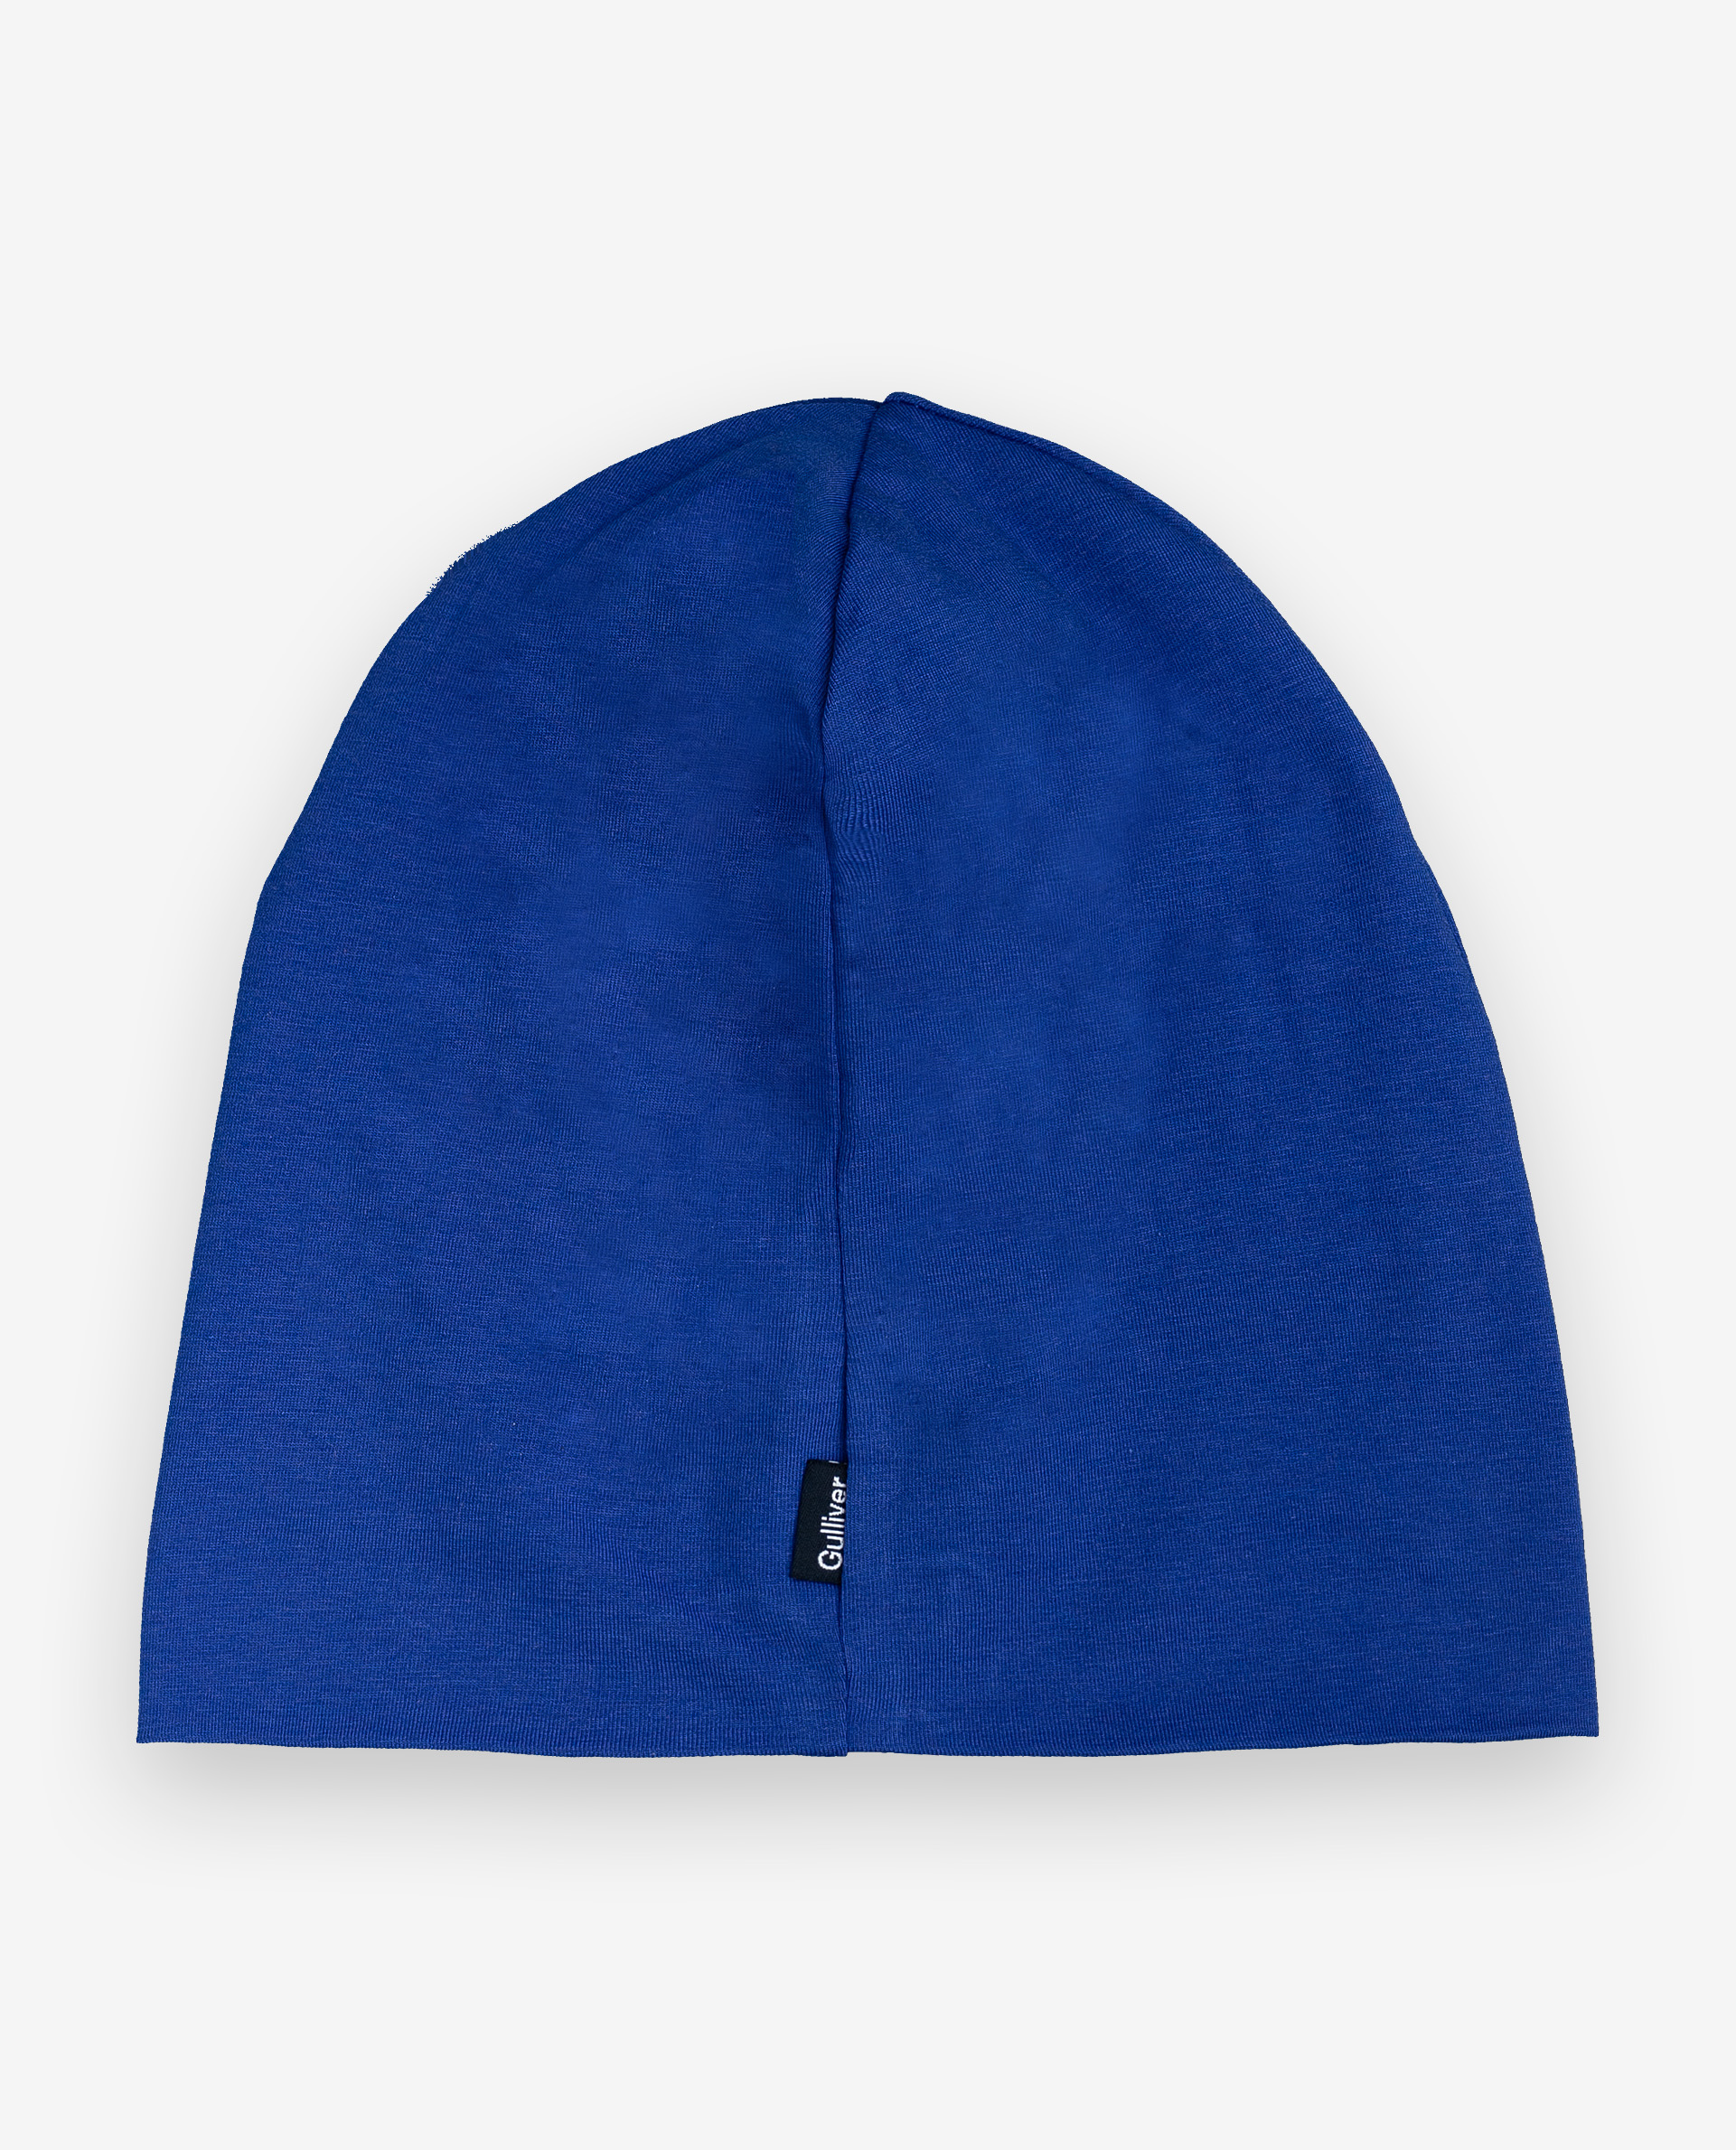 Синяя шапка с принтом Gulliver 12004BMC7302, размер 52 - фото 2